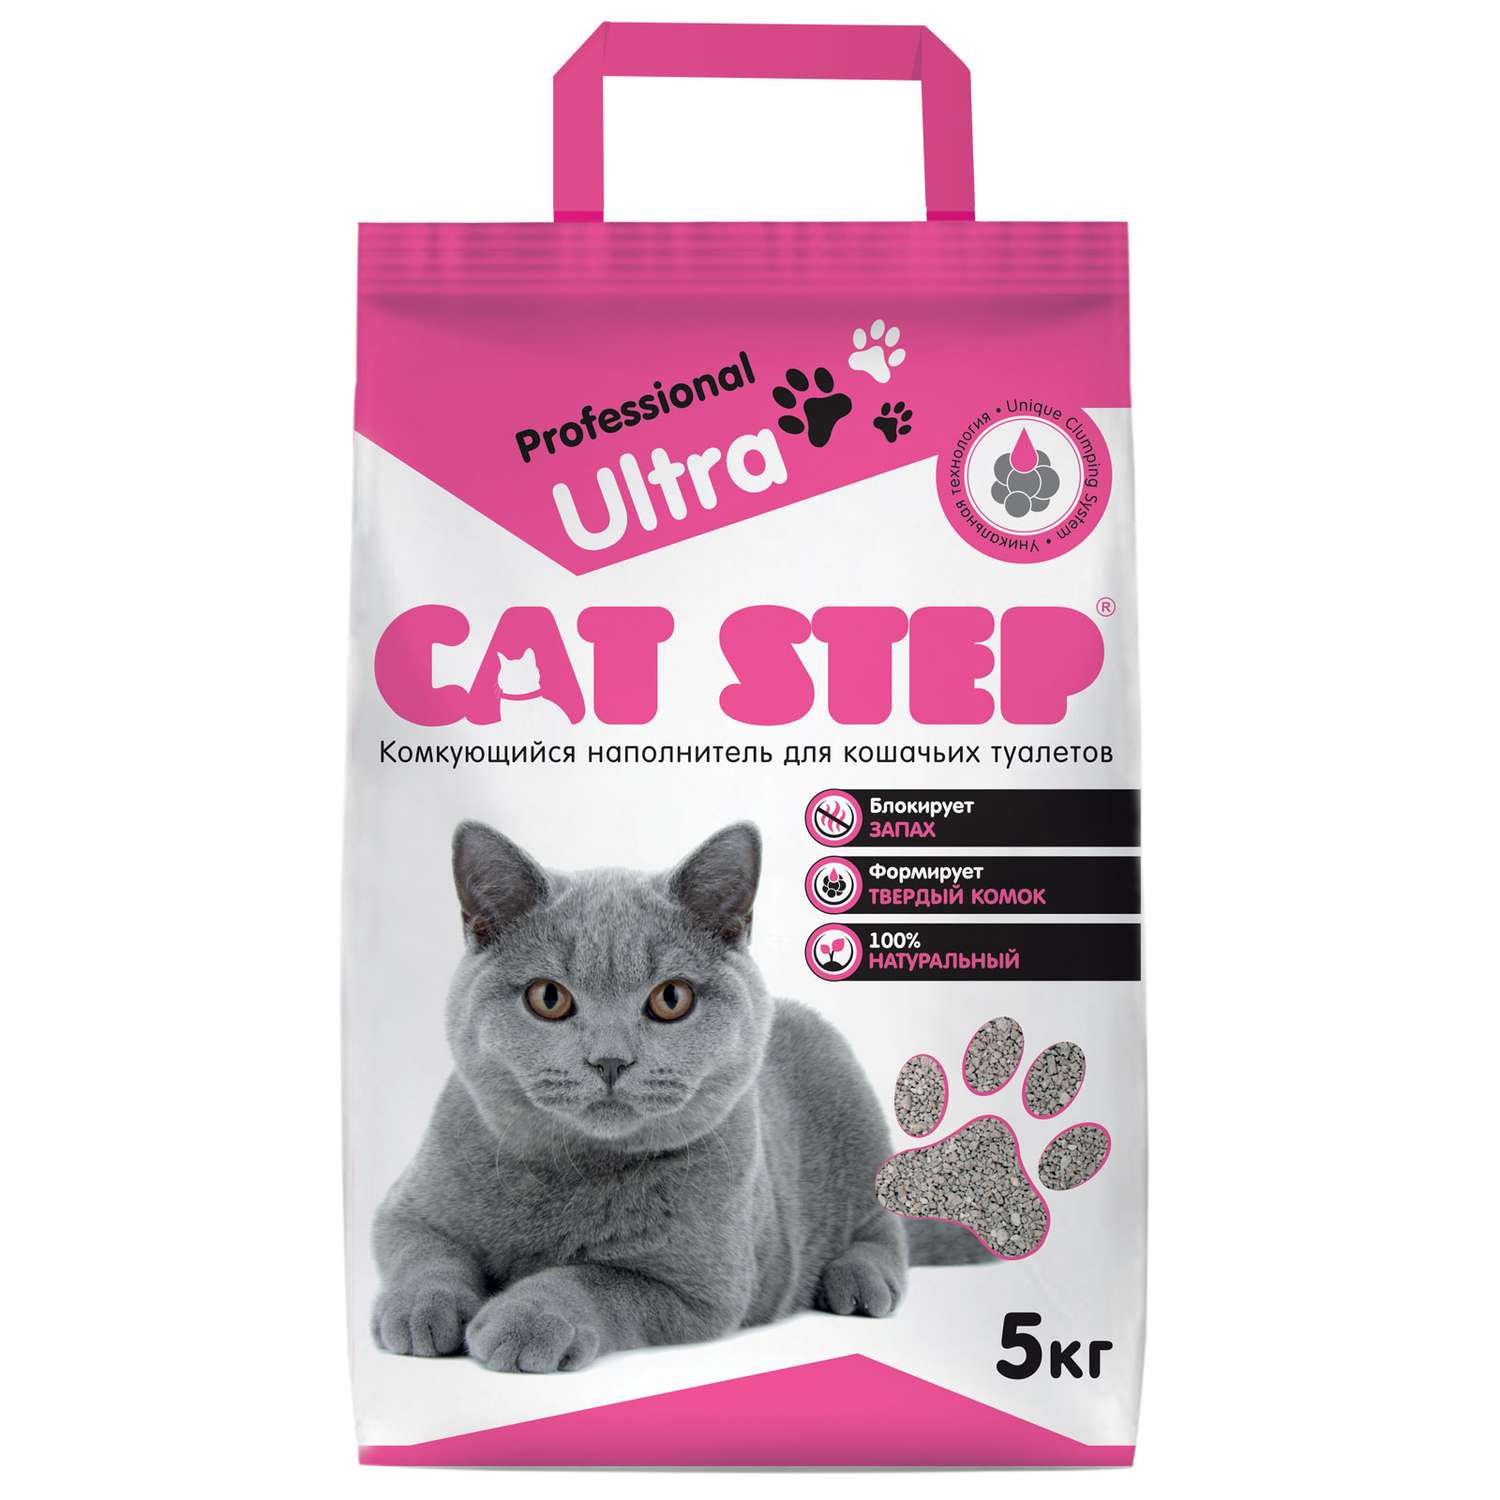 Наполнитель для кошек Cat Step Professional Ultra комкующийся 5кг - фото 1